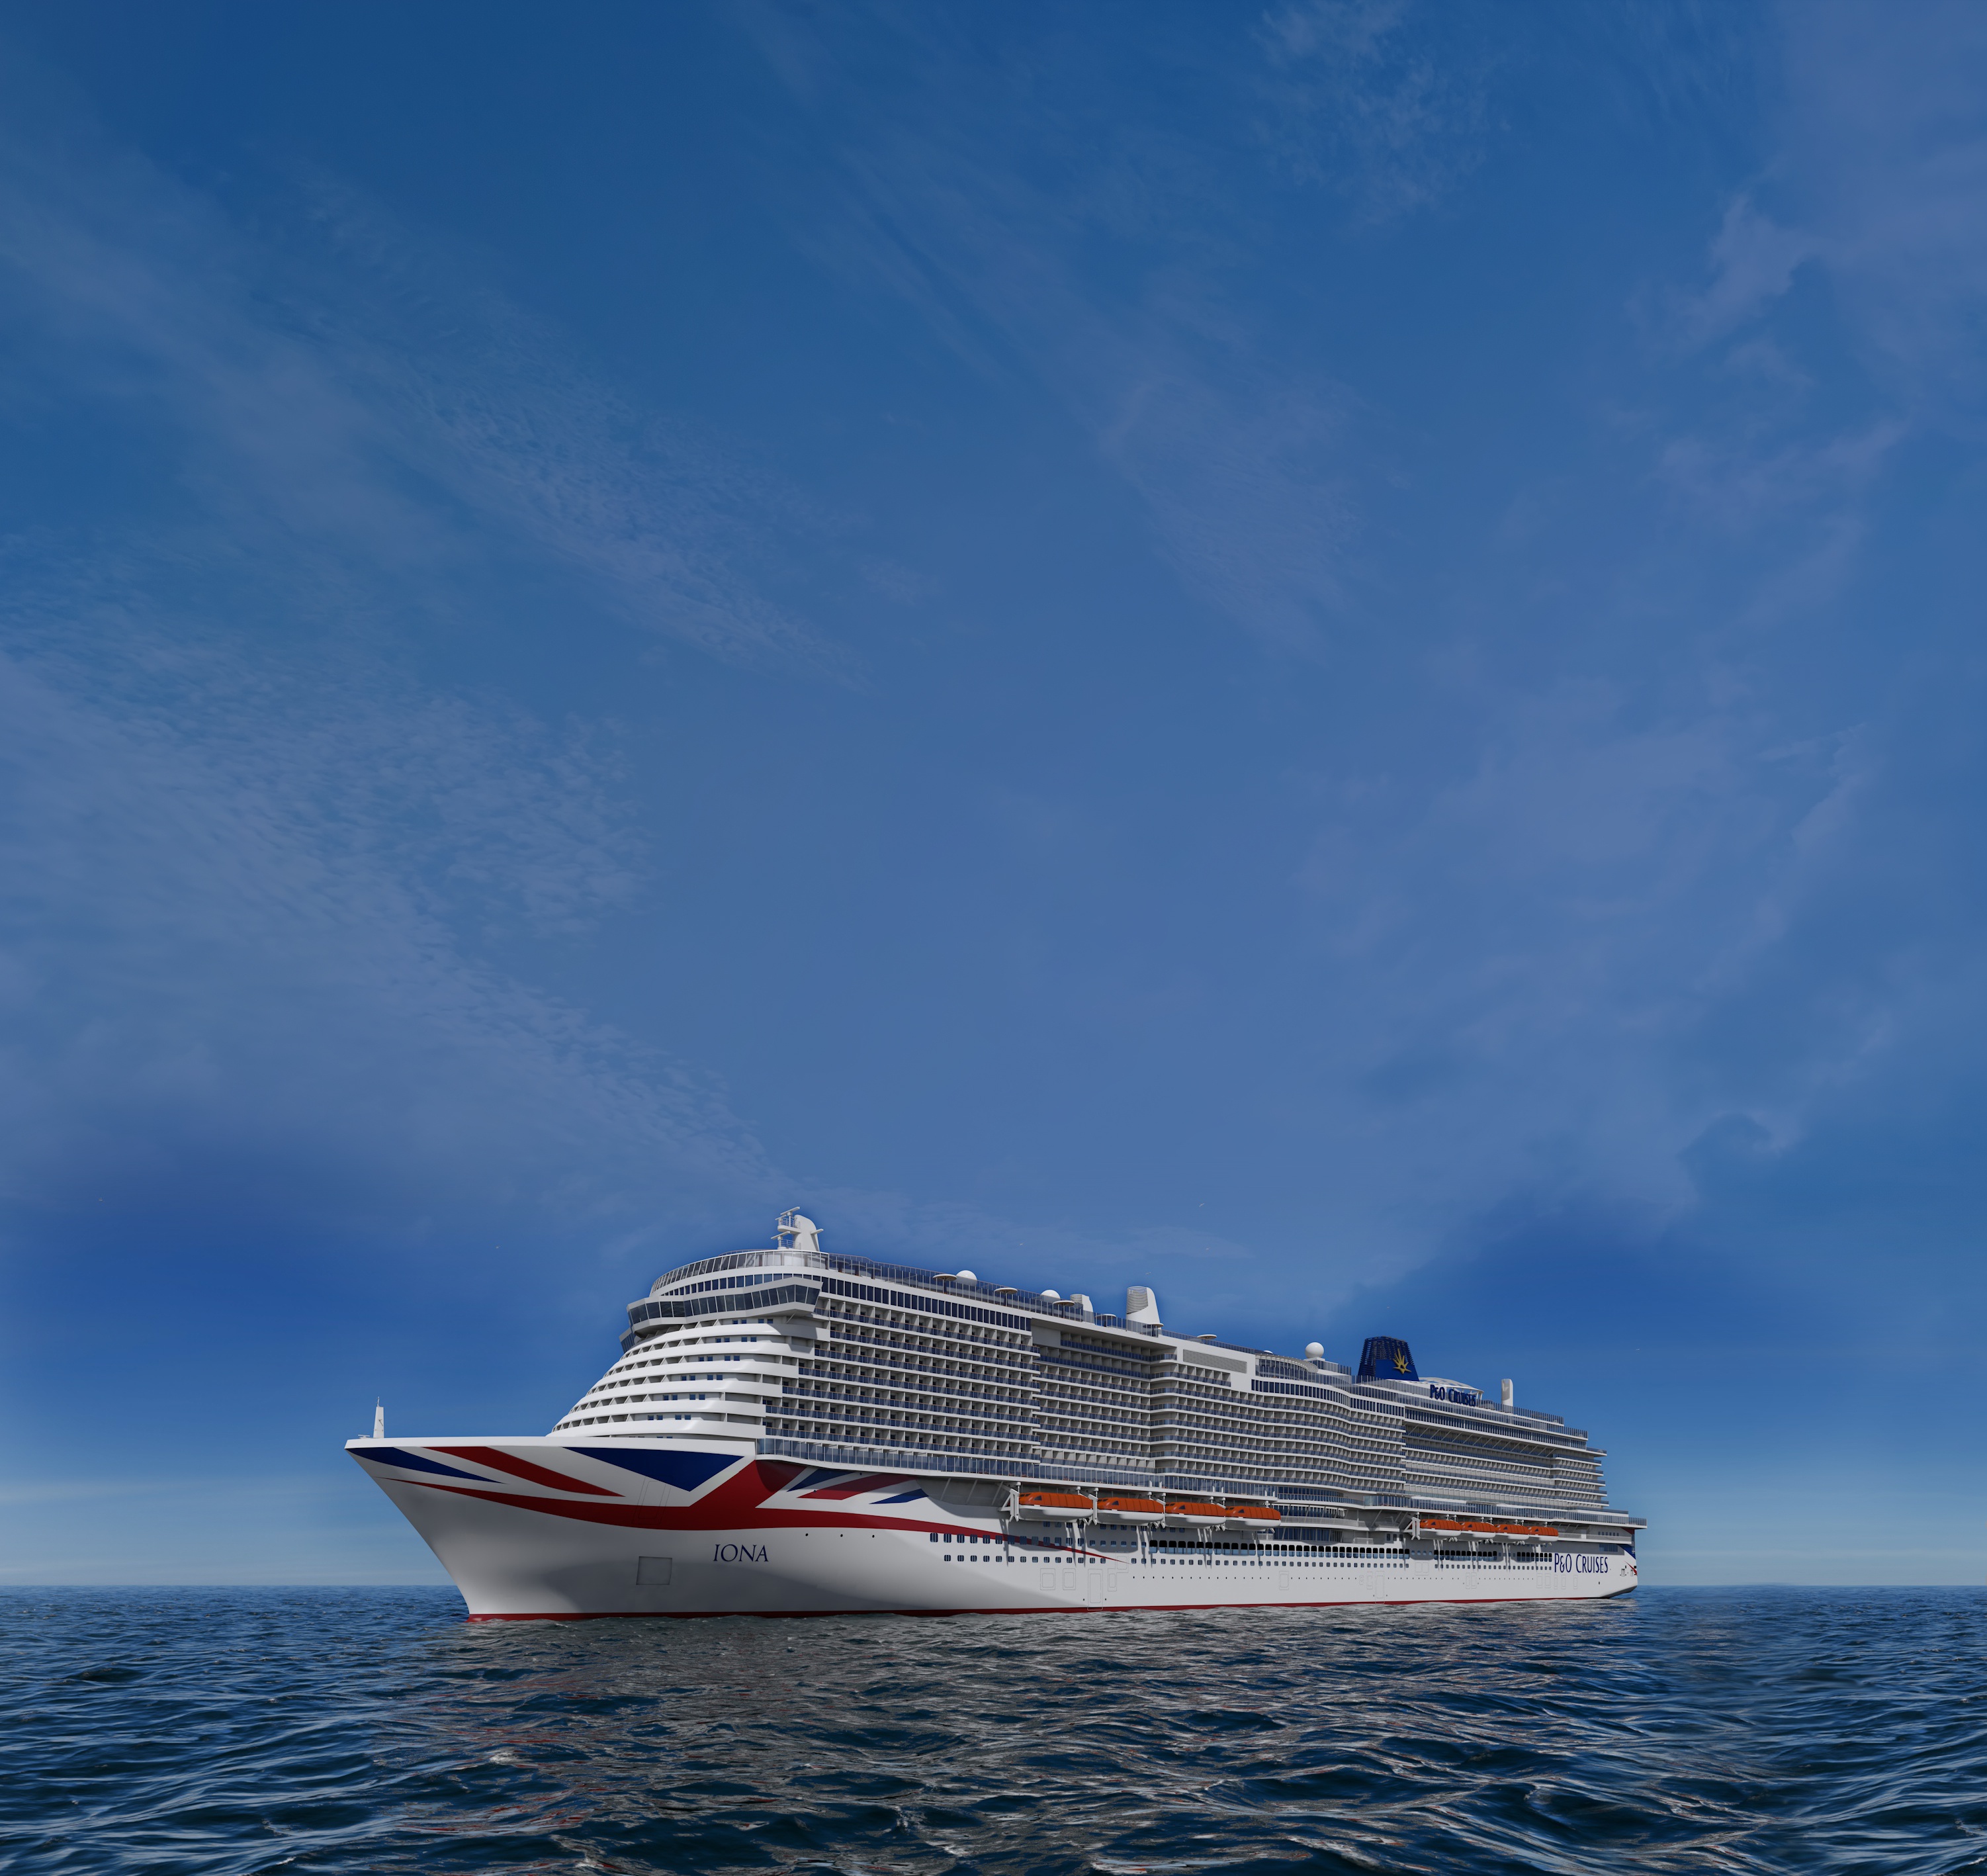 Das neue LNG Schiff Iona der Reederei P&O Cruises kommt 2020 auf den Markt.